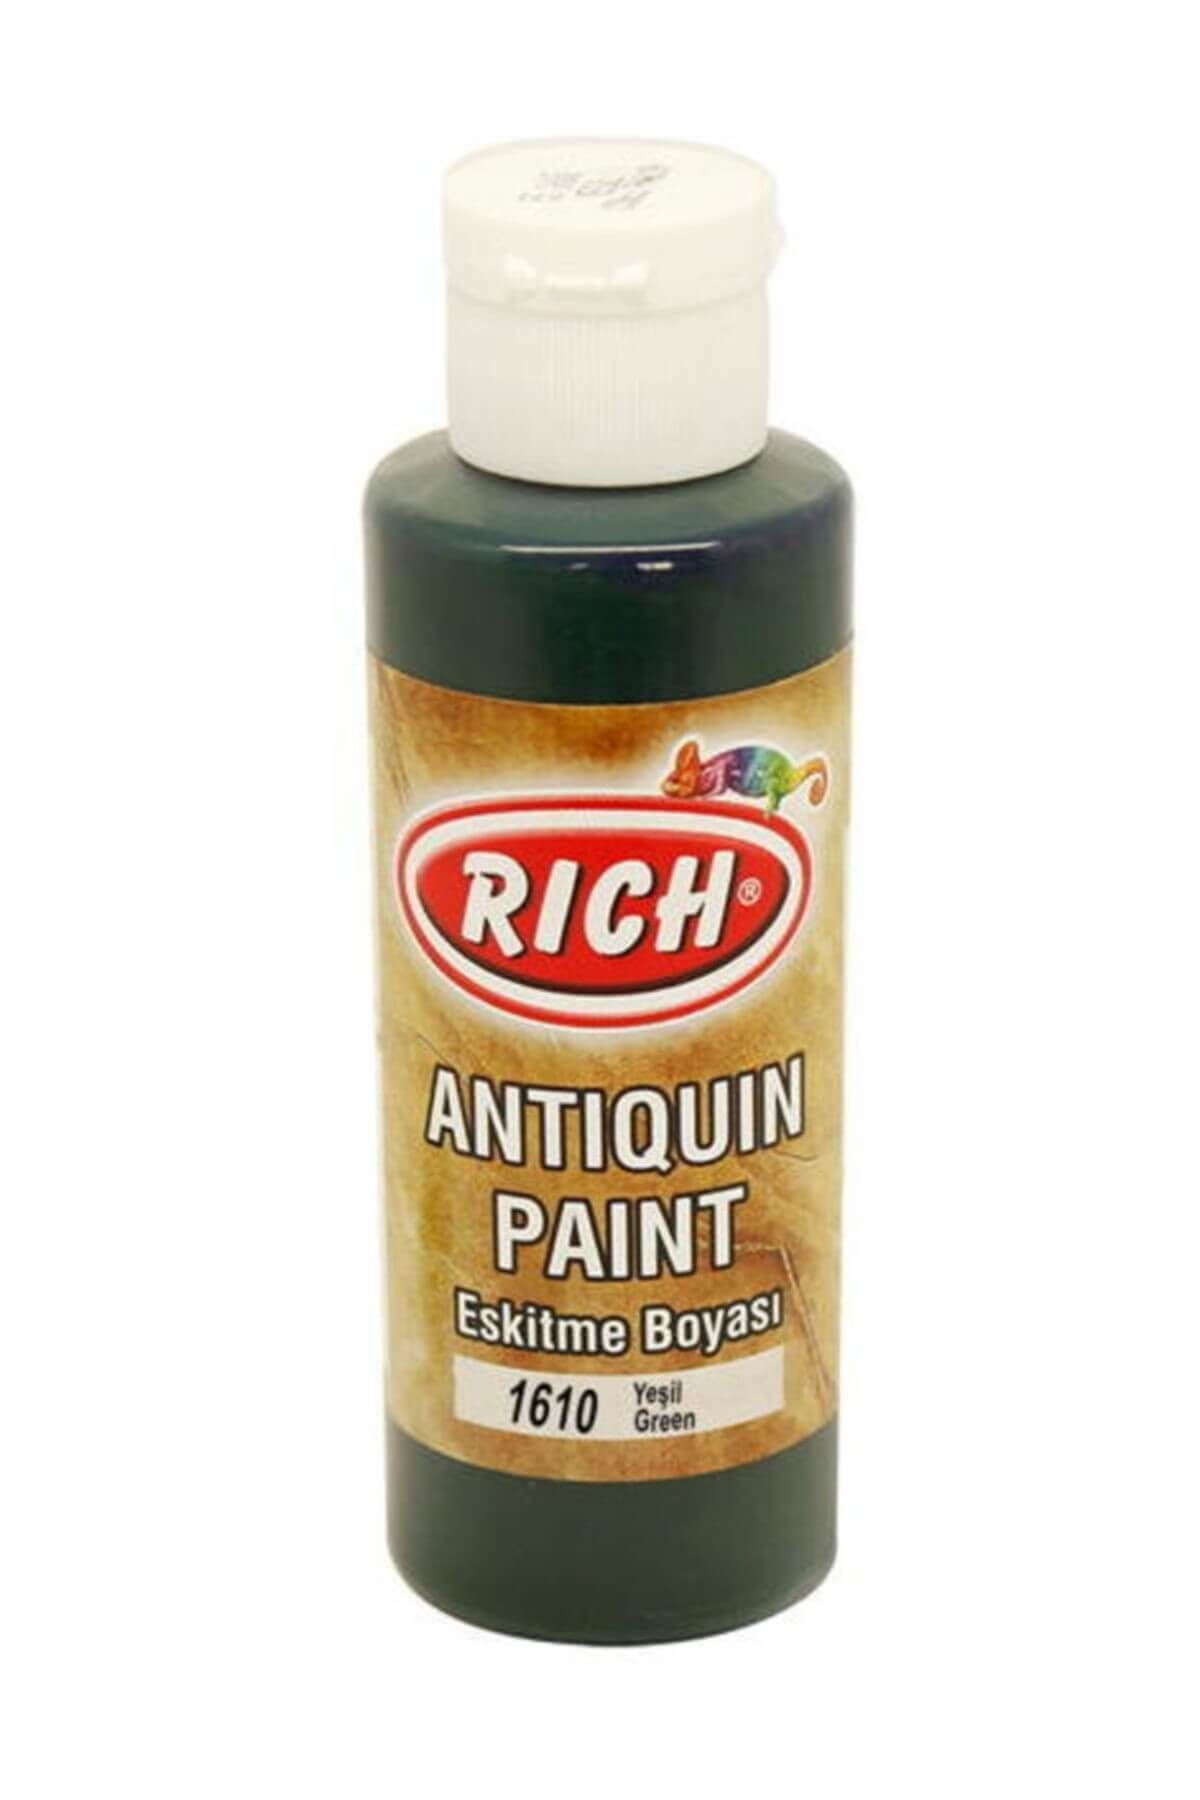 Rich Antiquing Paint Eskitme Ahşap Boyası 130 ml. 1610 Yeşil